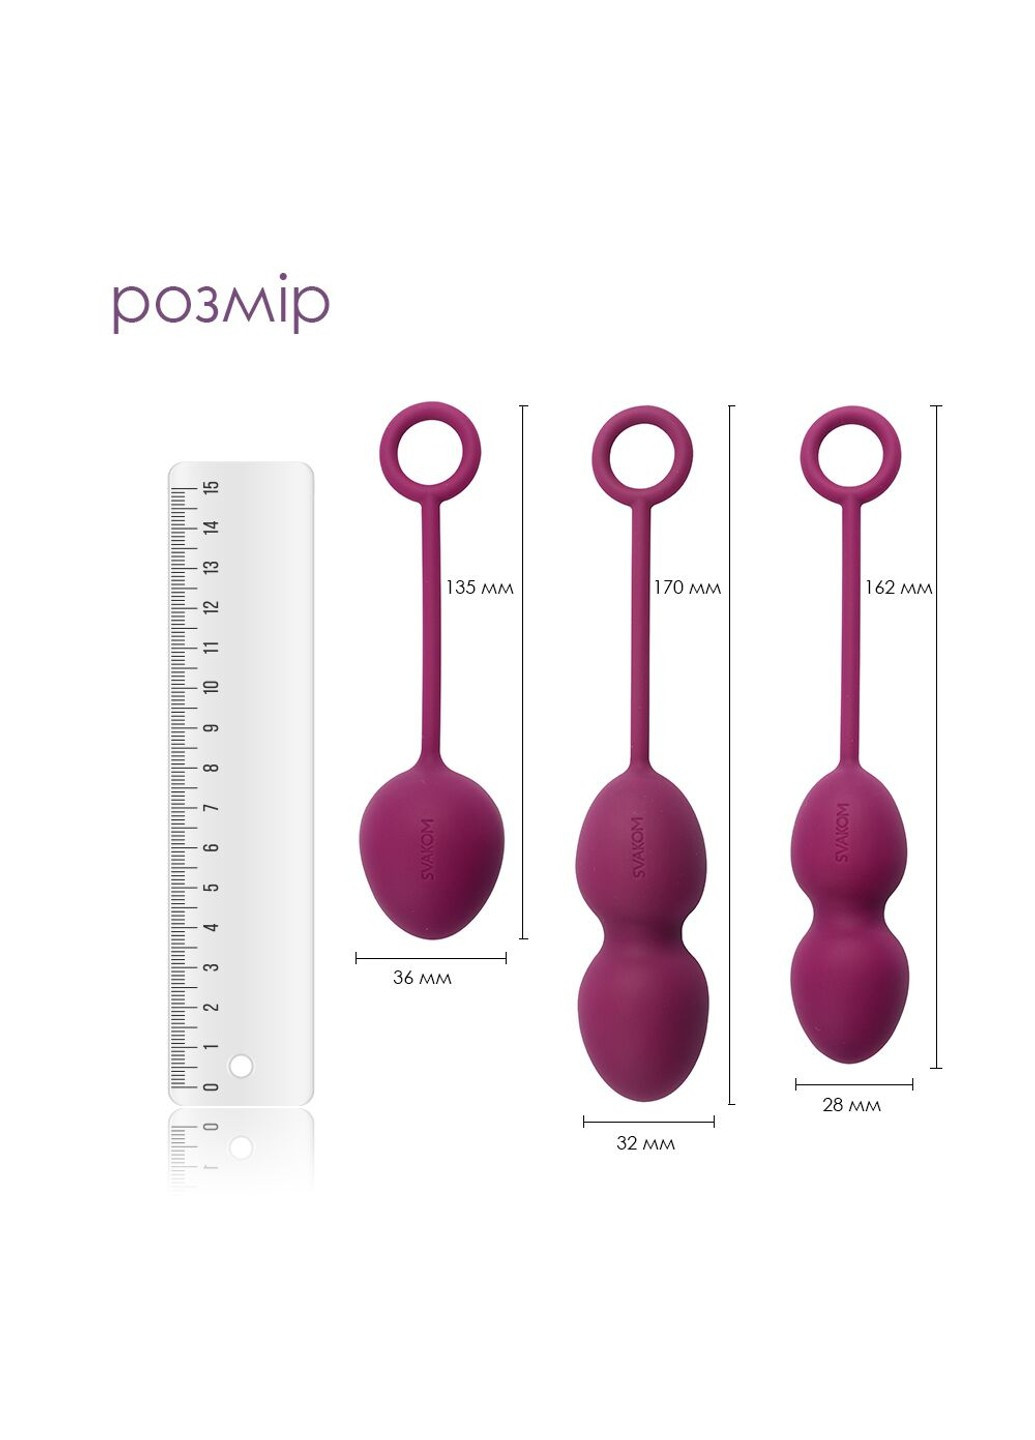 Набор вагинальных шариков со смещенным центром тяжести Nova Violet Svakom (277237587)